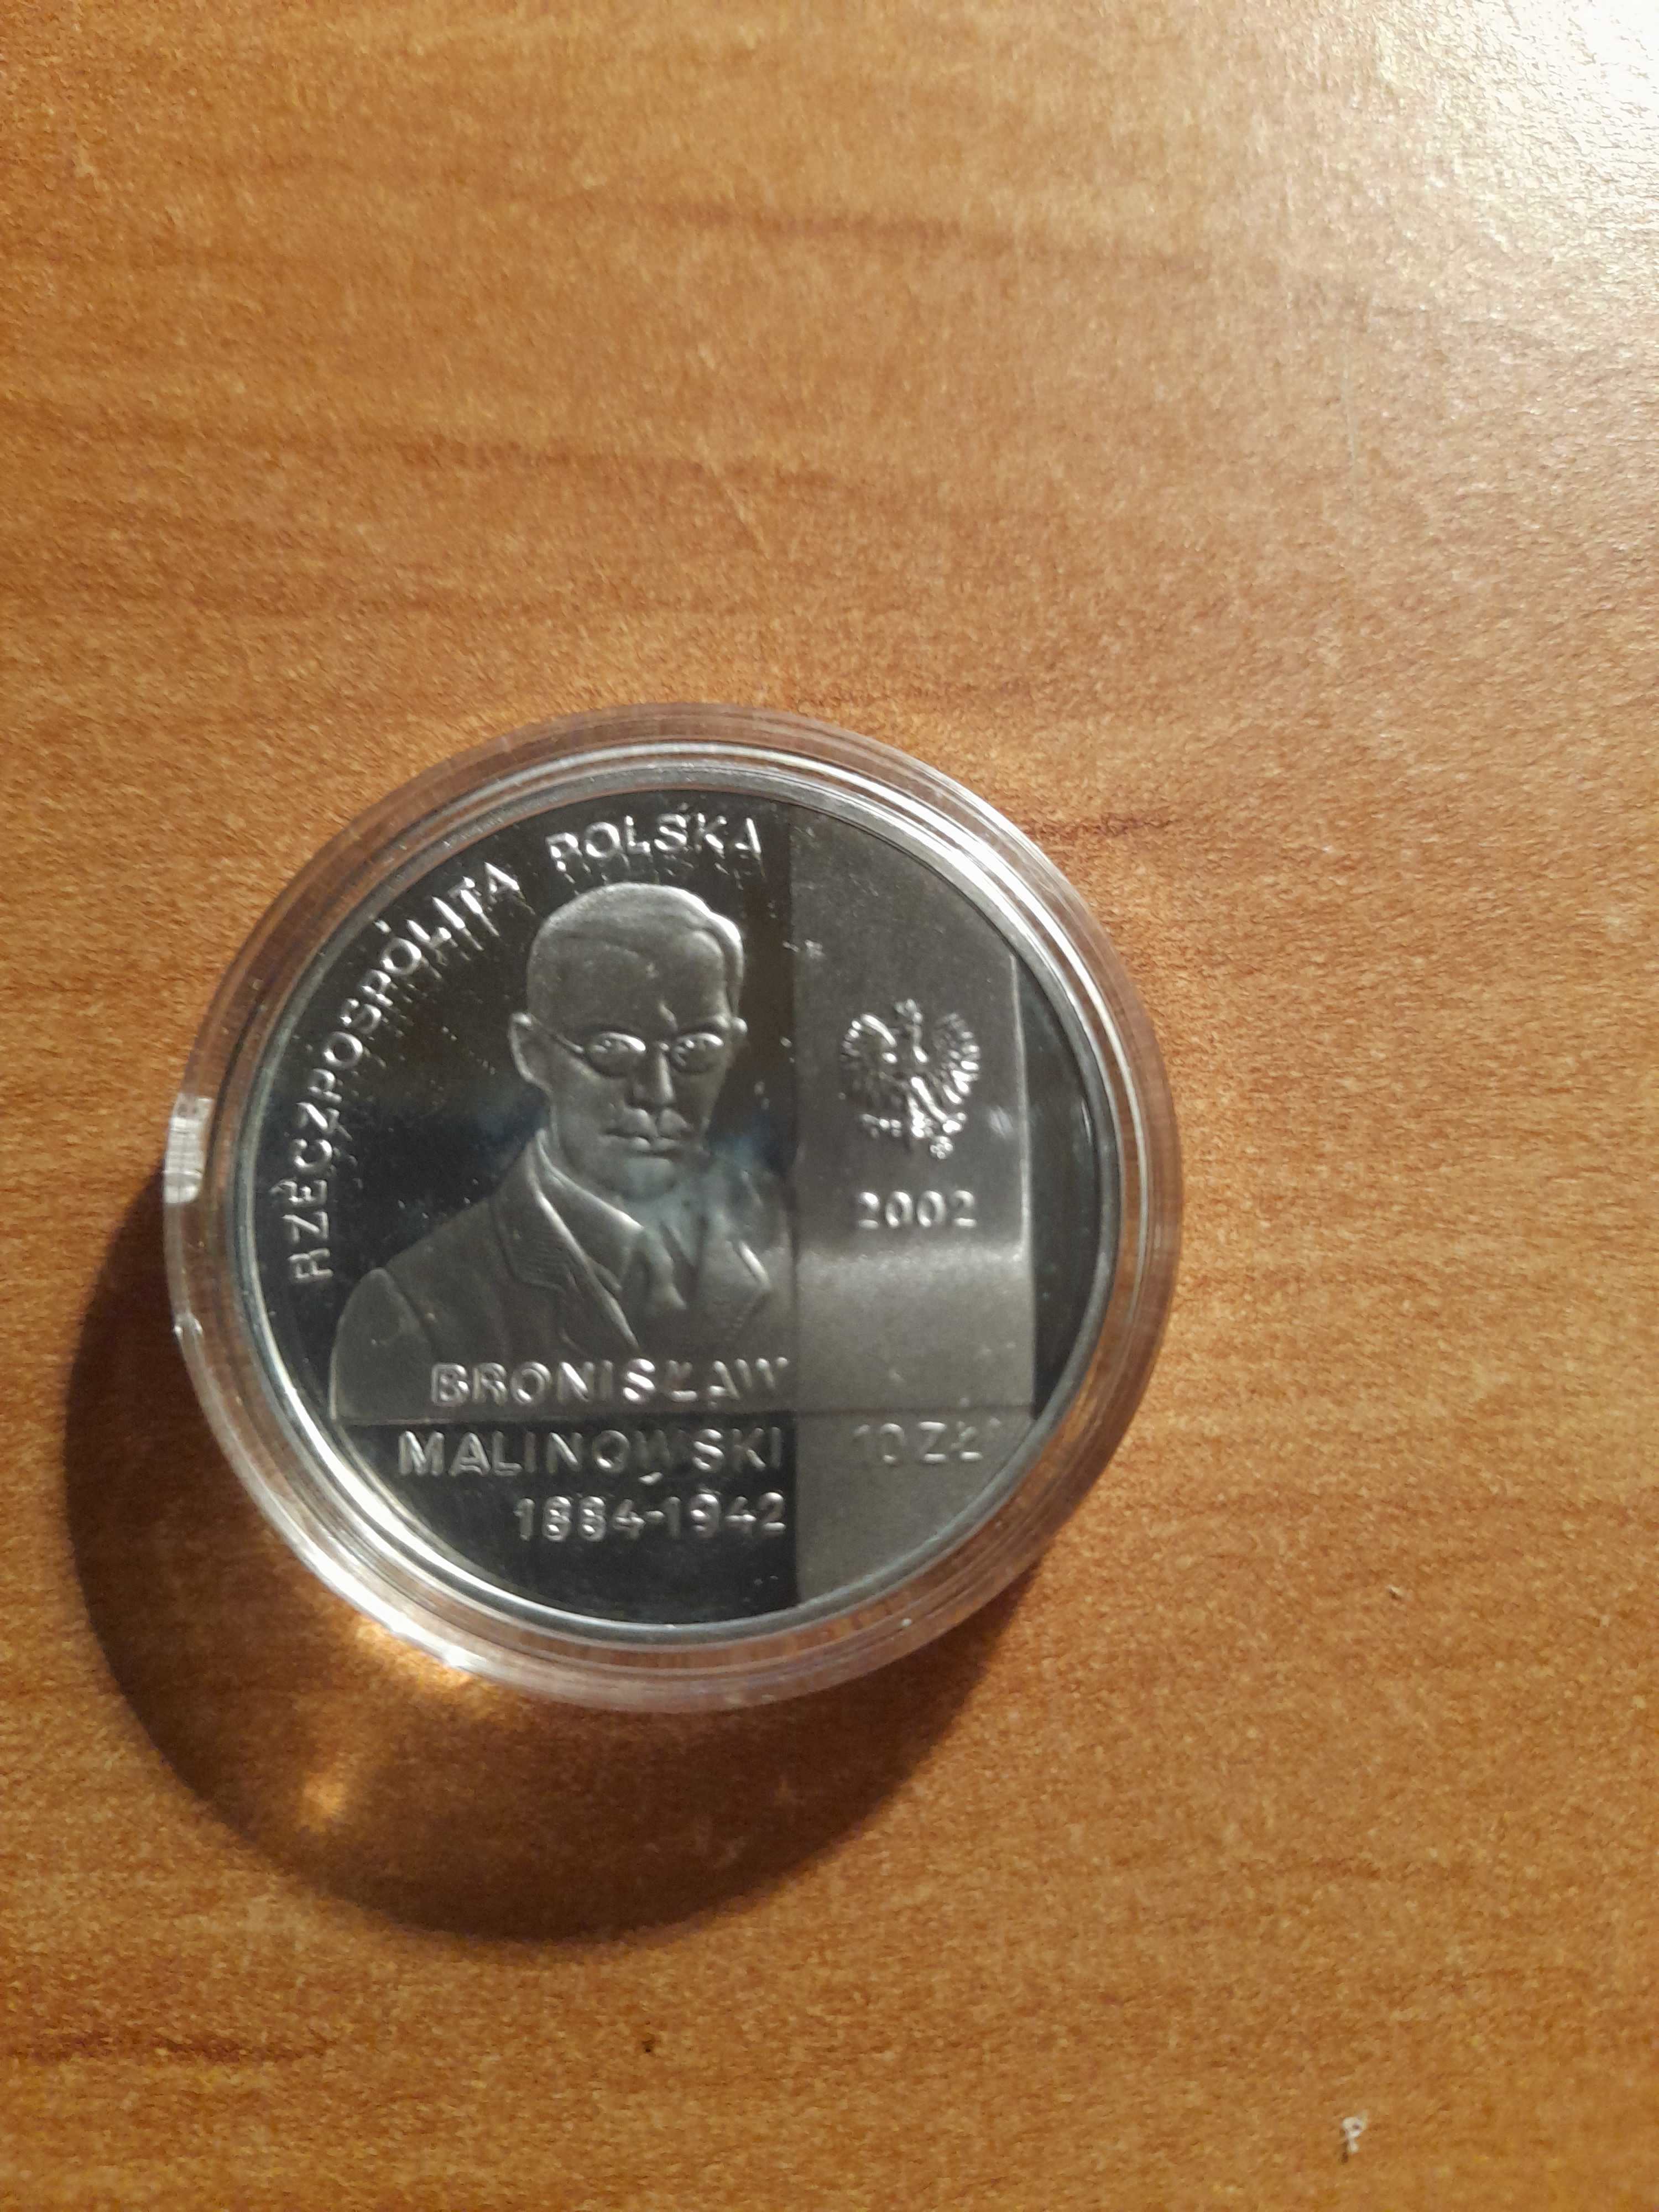 Moneta srebrna z 2002 r. "Bronisław Malinowski" 10 zł